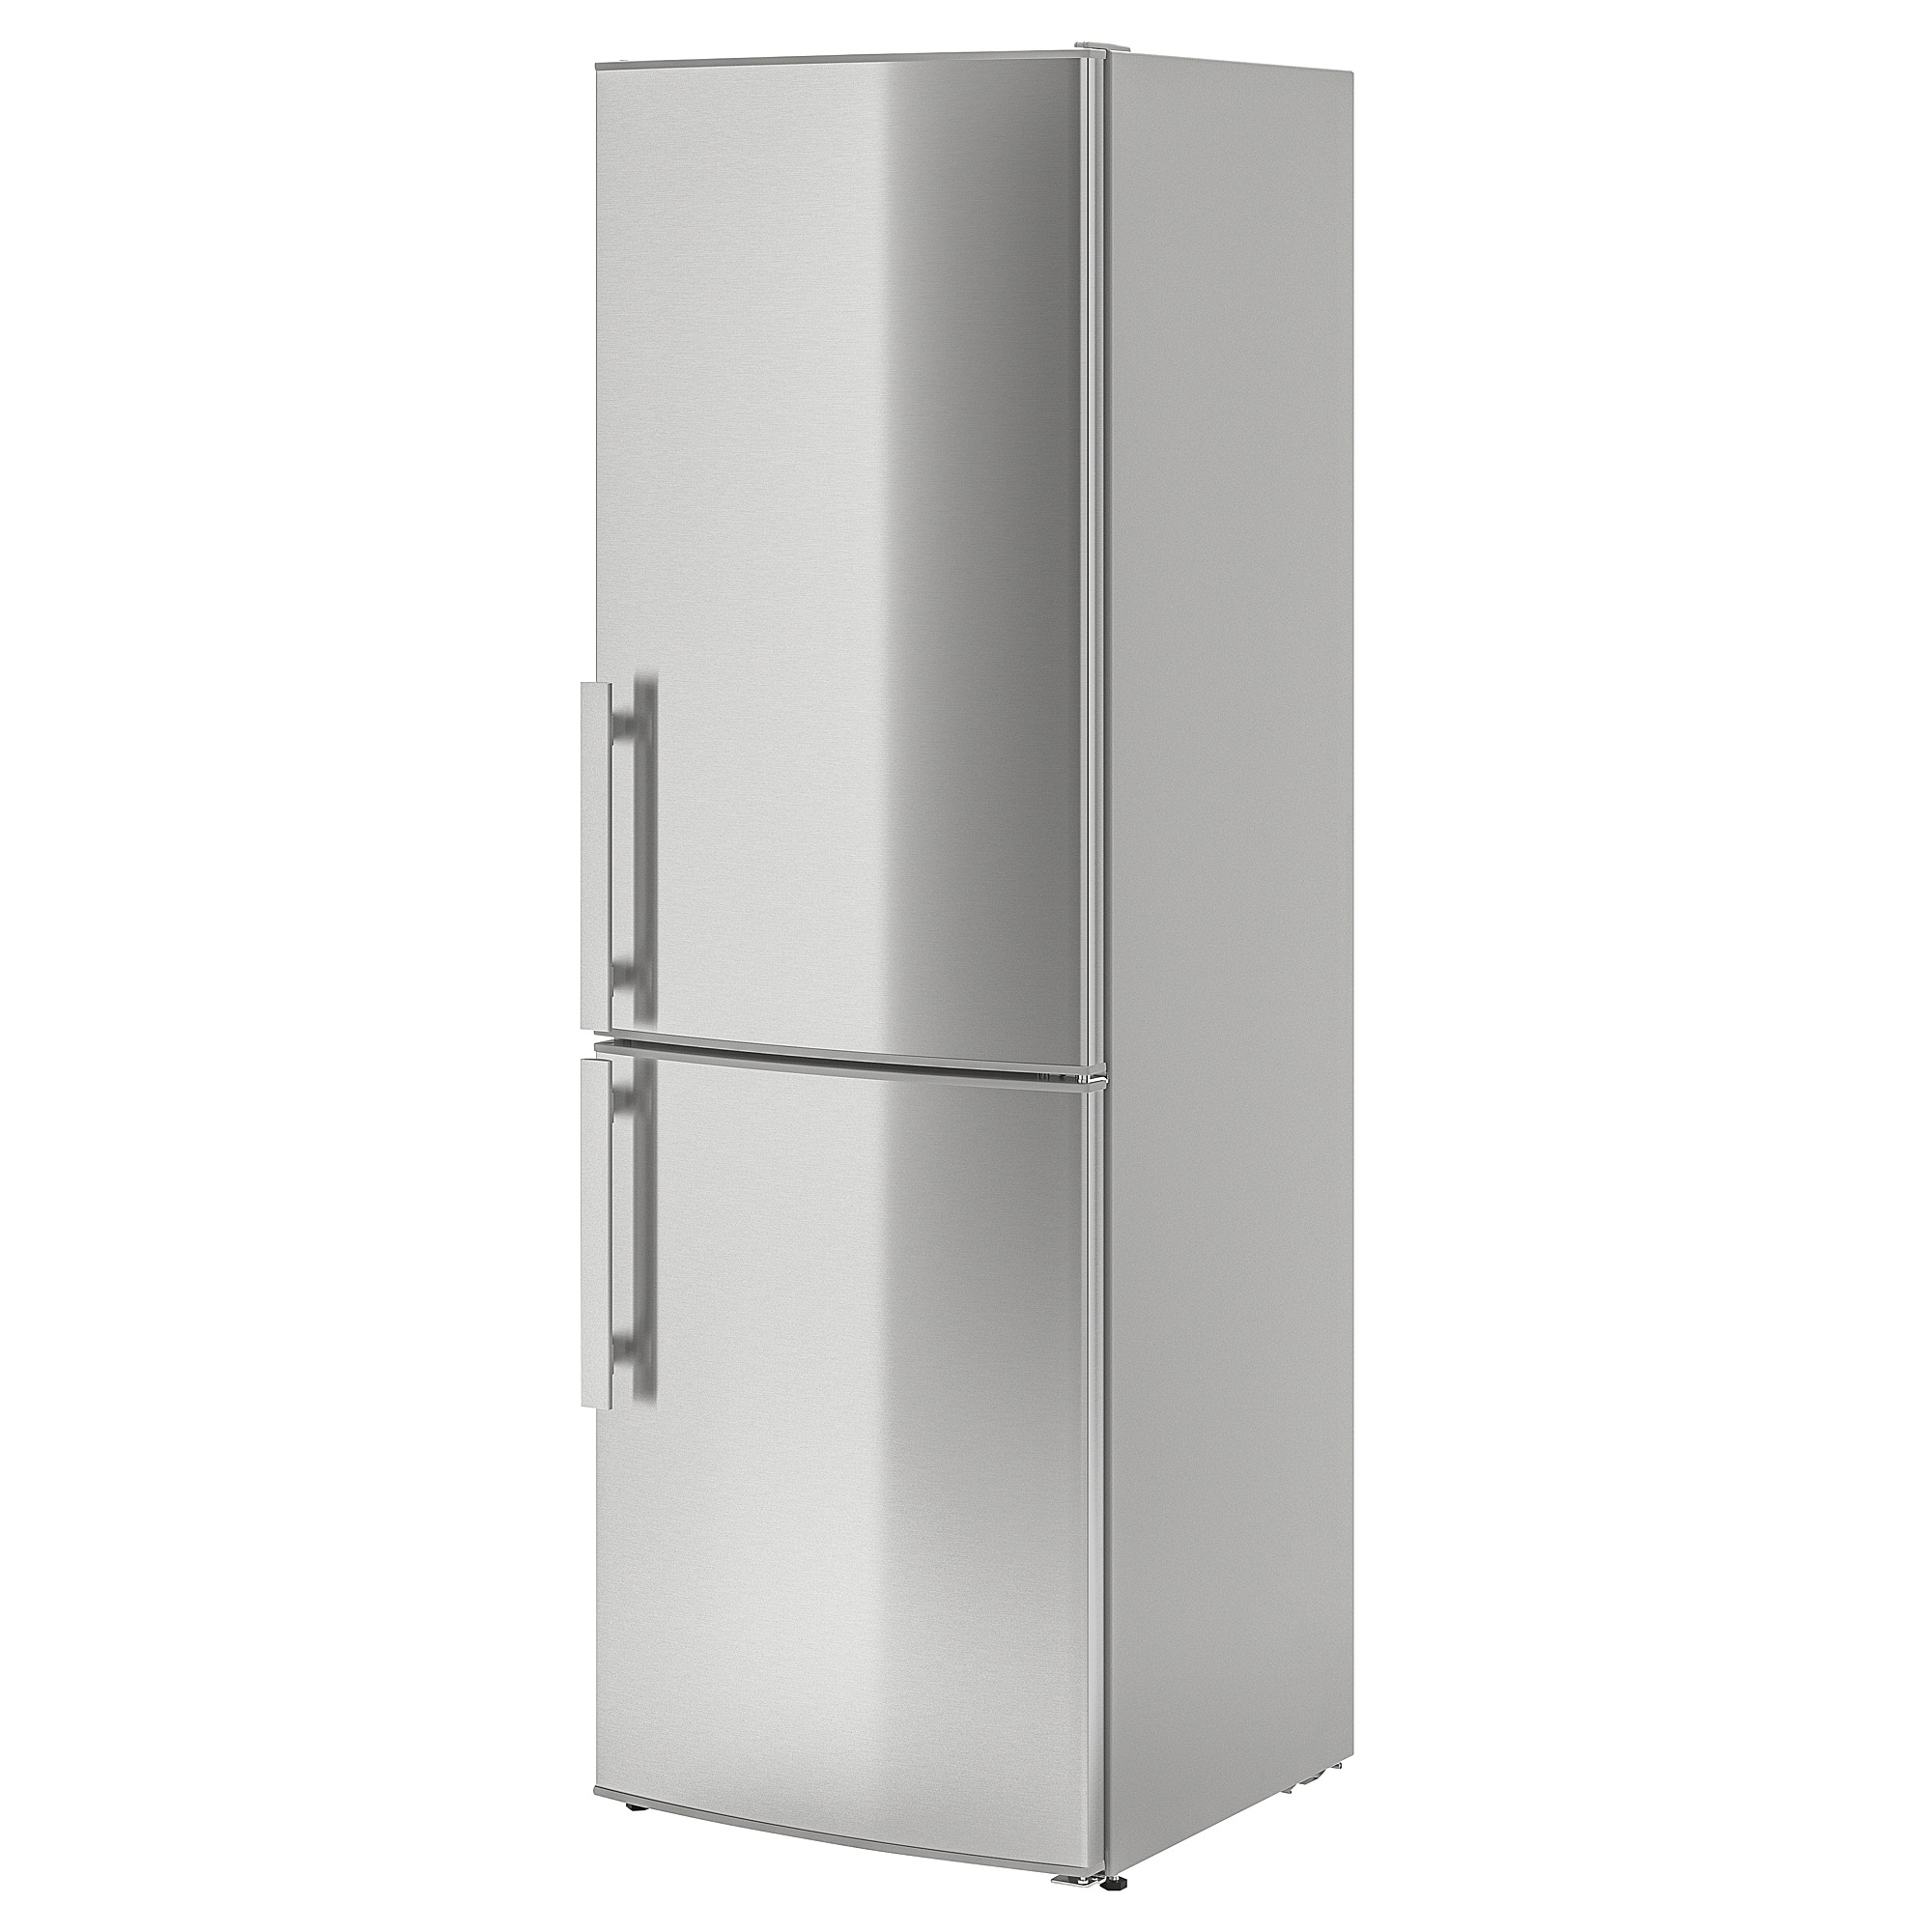 Купить холодильник в спб ноу фрост двухкамерный. Холодильник kylig ikea. Whirlpool холодильник ikea. Холодильник Hisense rb343d4cw1. Икеа Вирпул холодильник.